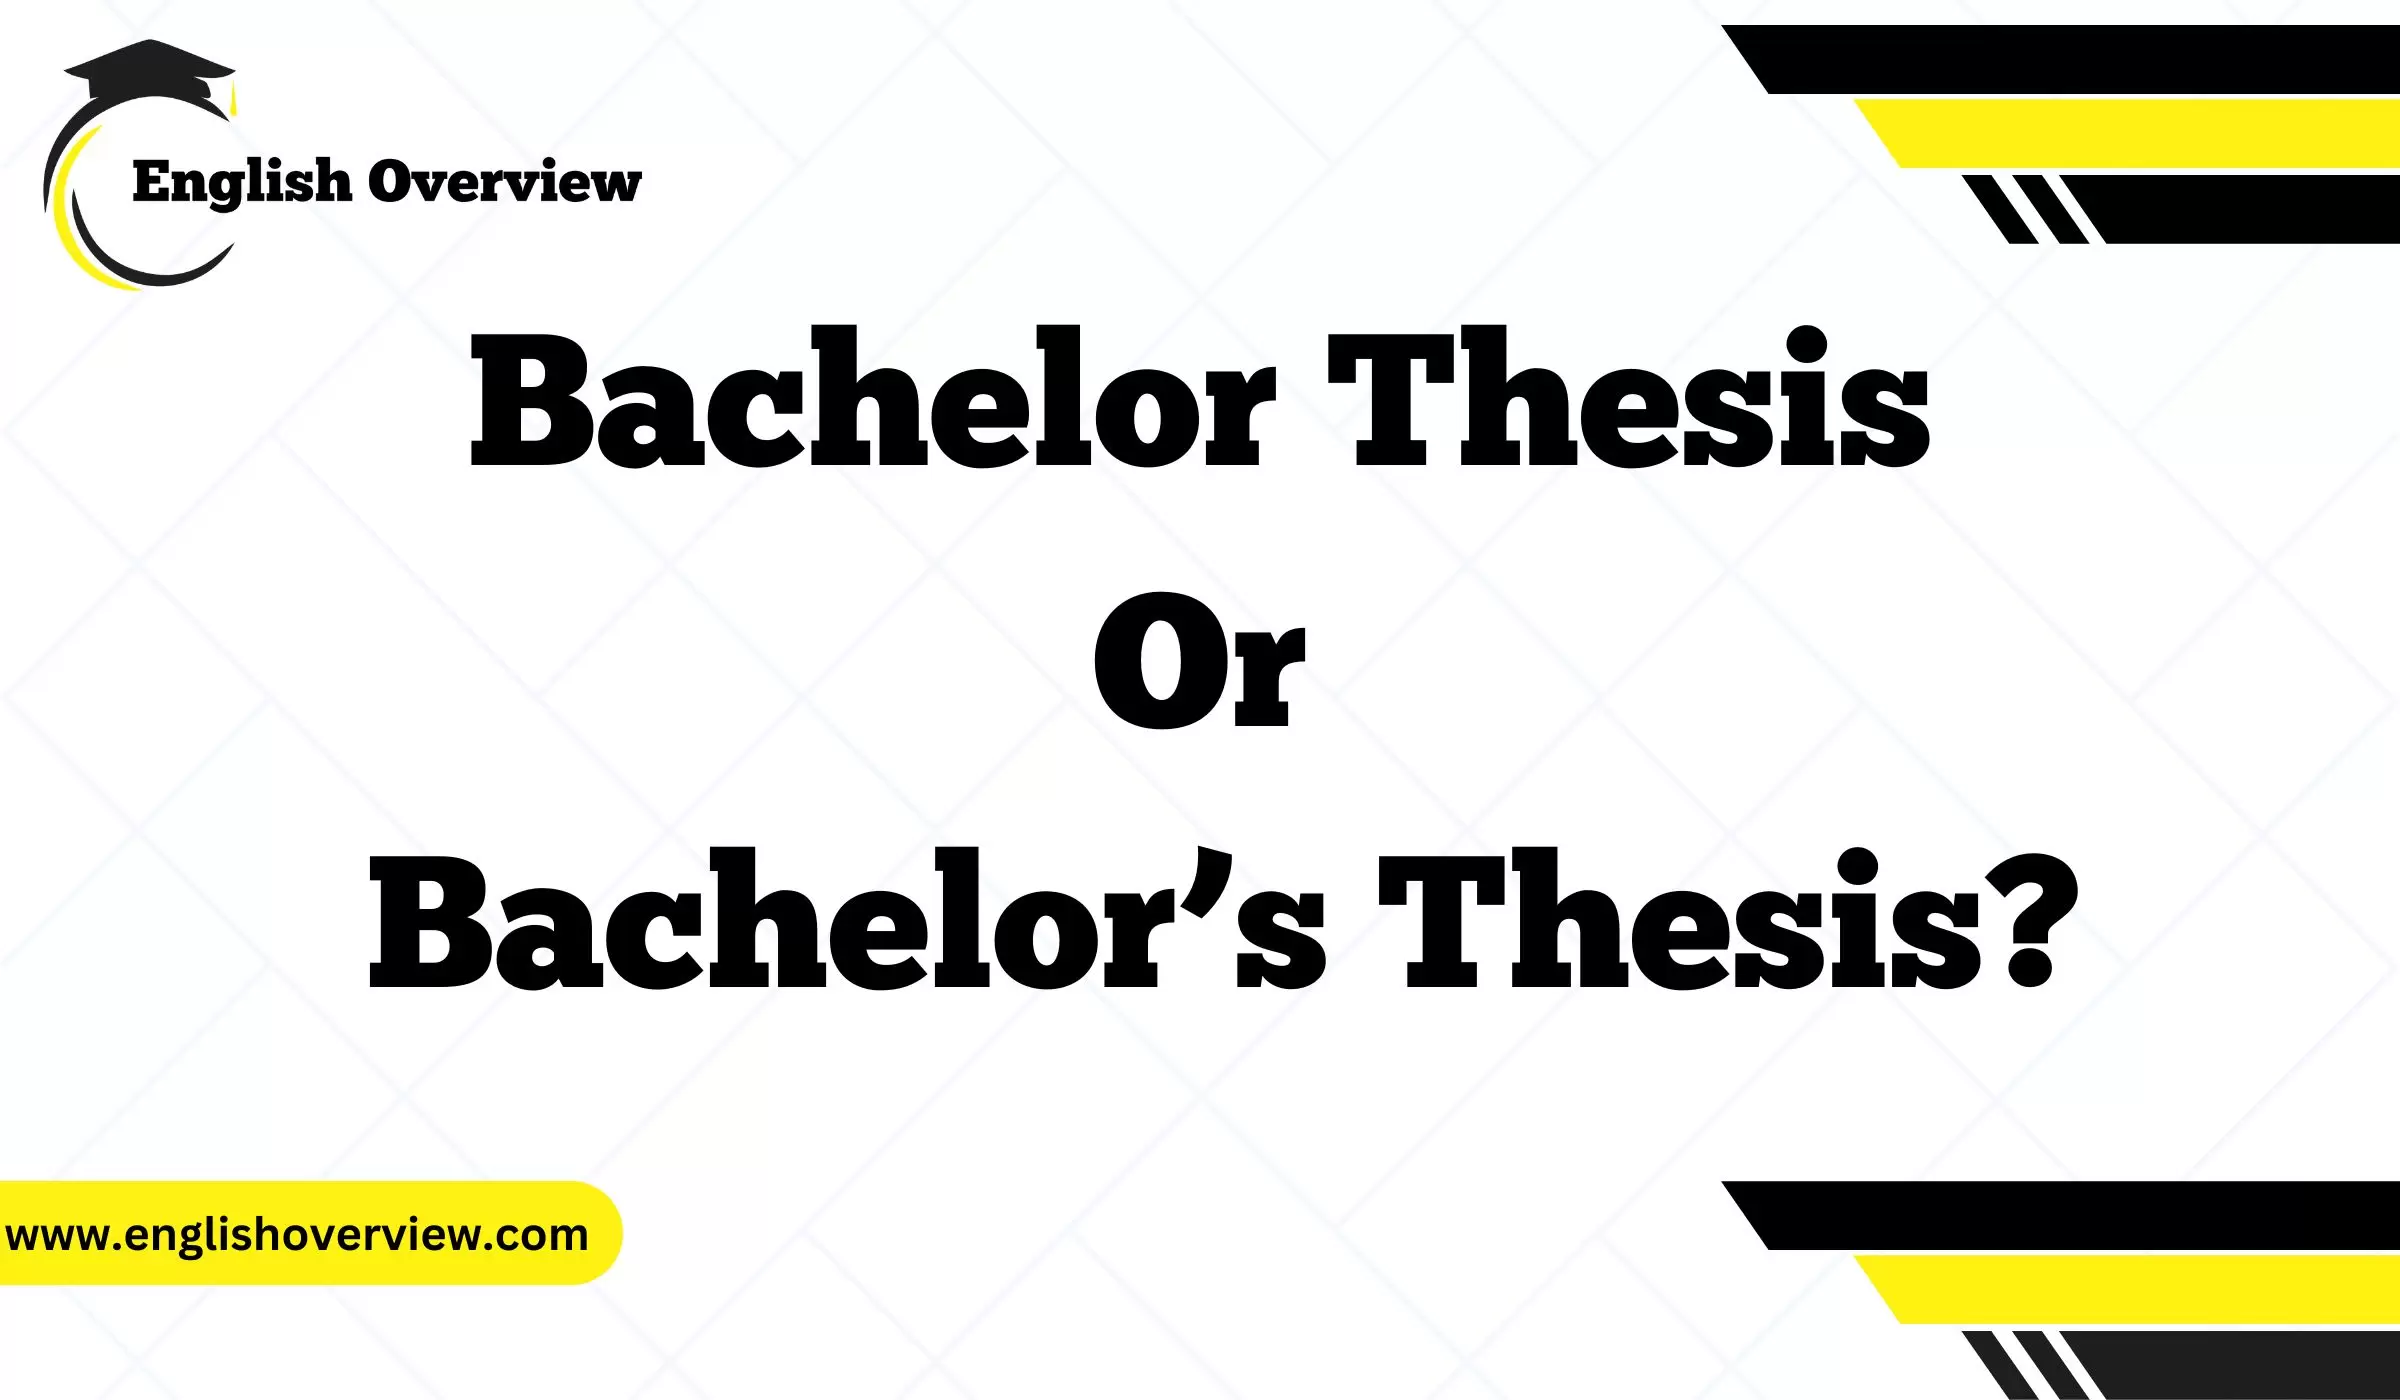 Bachelor Thesis or Bachelor’s Thesis